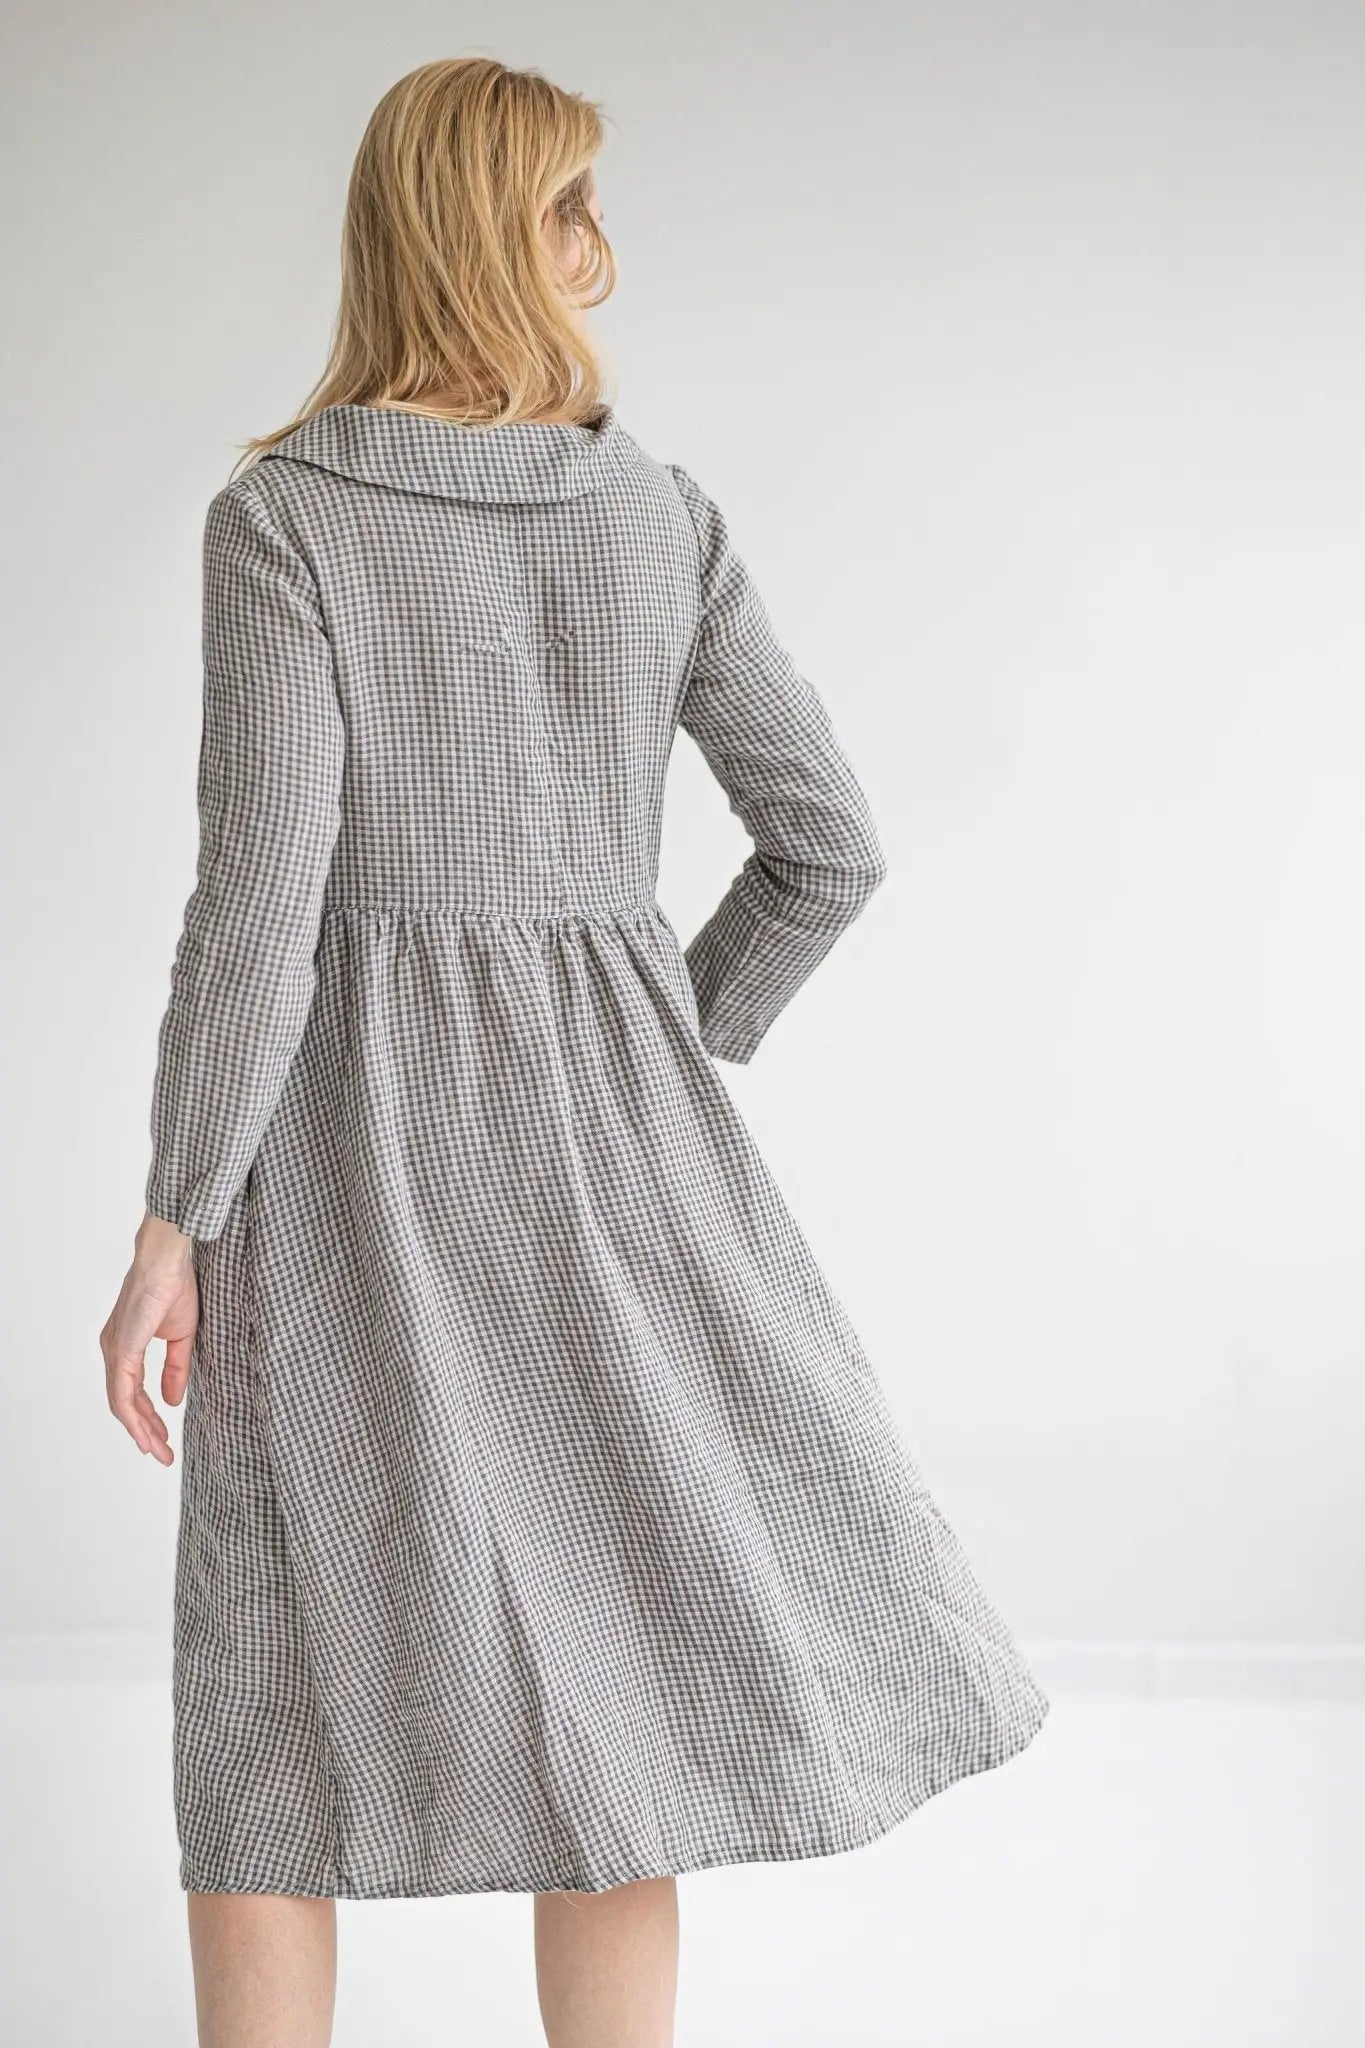 Renaissance Romantic Linen Dress - Epic Linen luxury linen